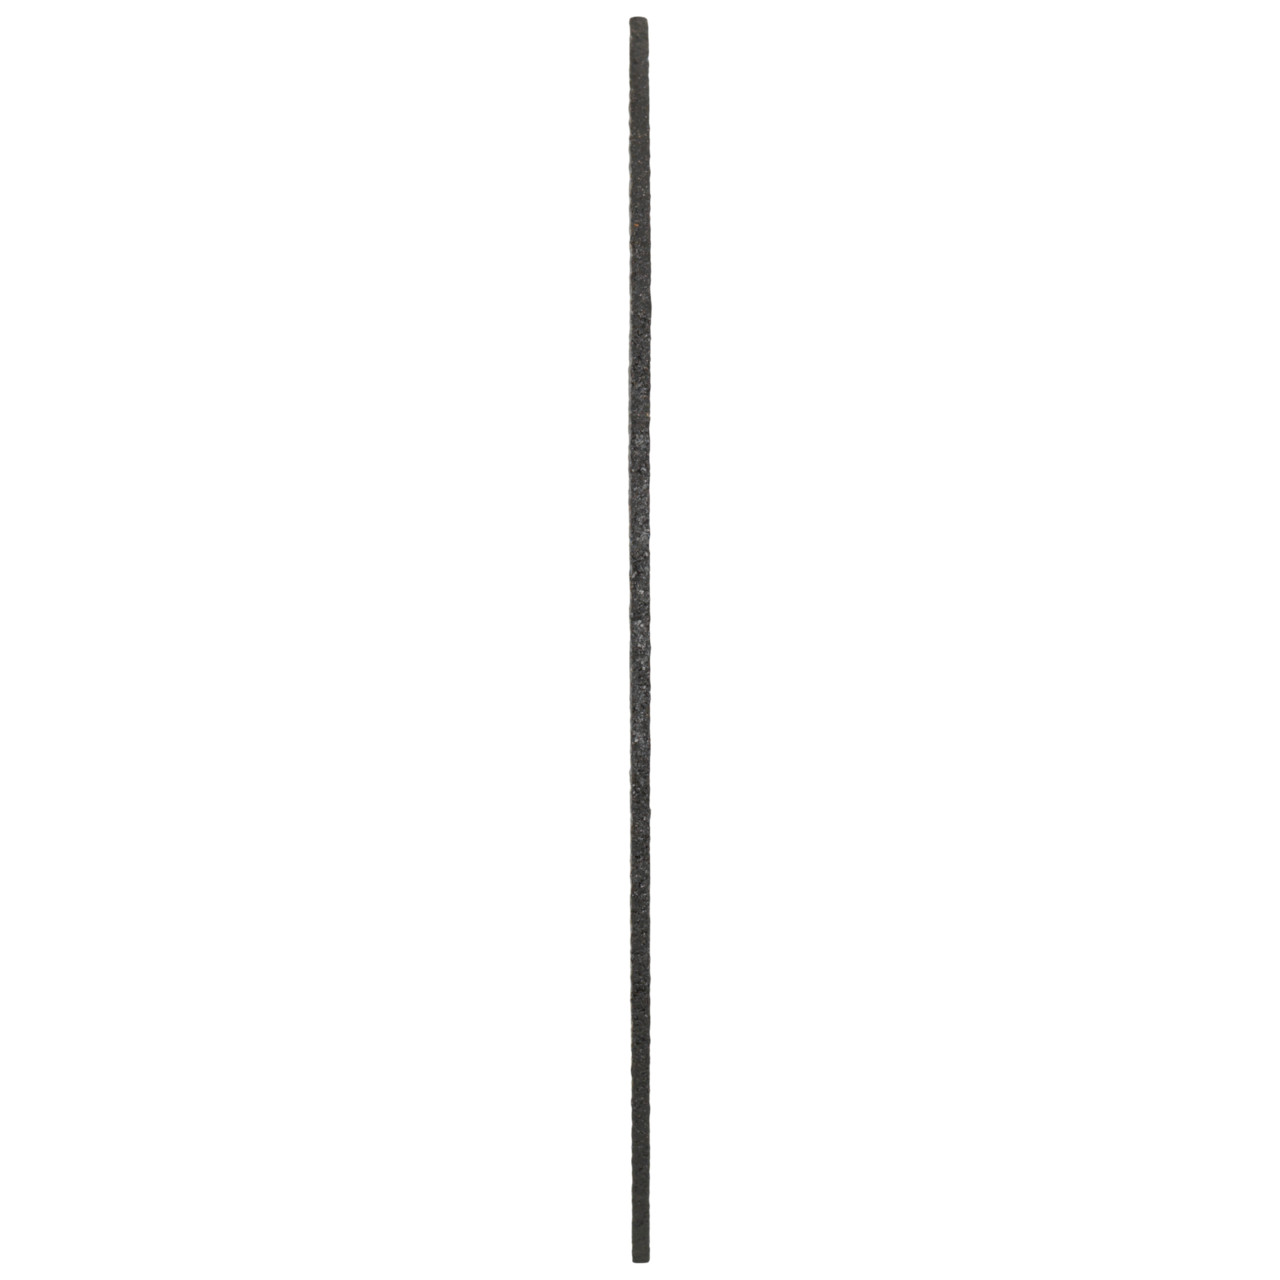 TYROLIT doorslijpschijven DxDxH 115x2,5x22,23 2in1 voor staal en roestvrij staal, vorm: 41 - rechte uitvoering, Art. 222997